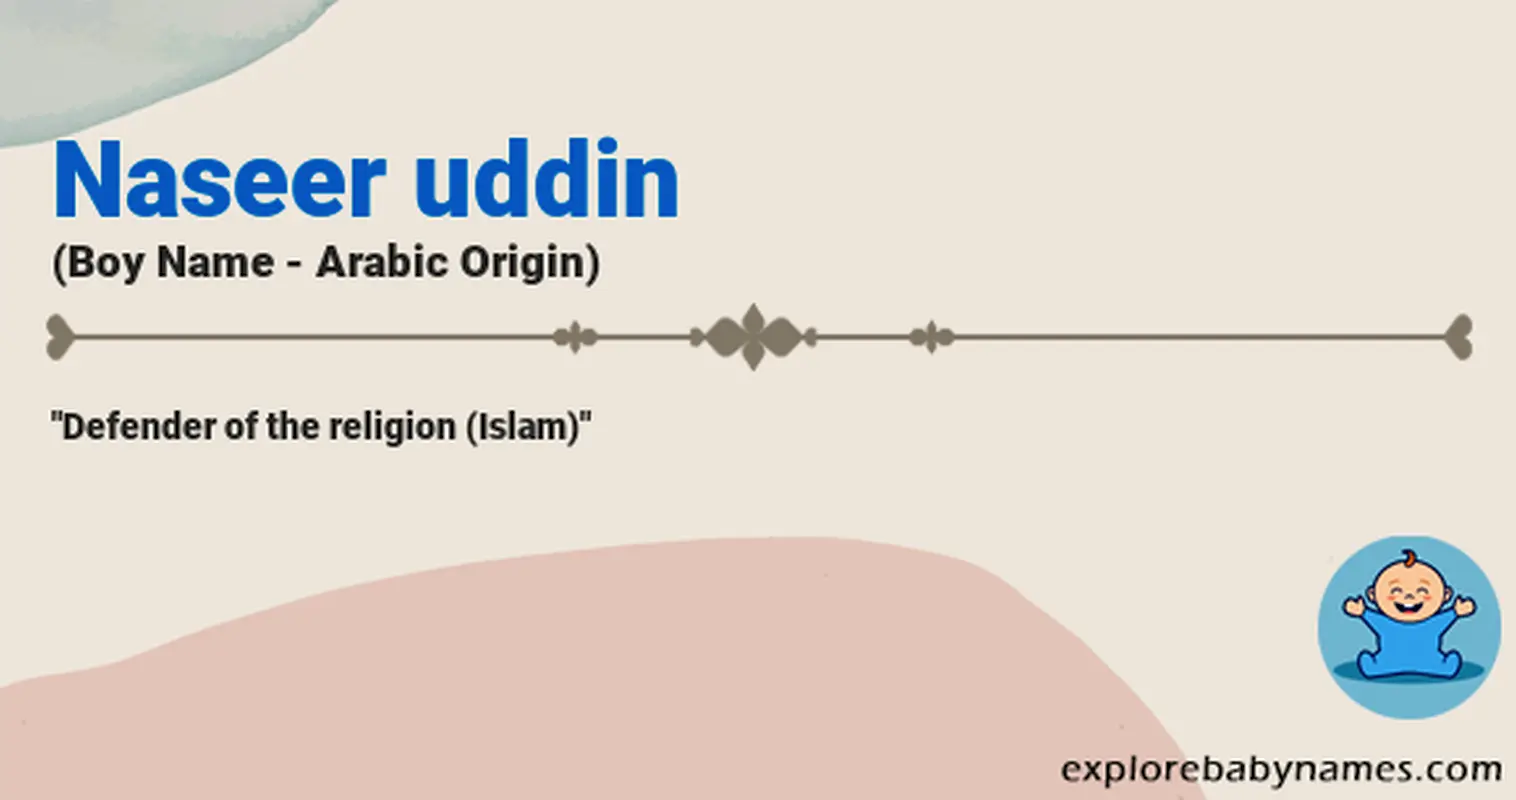 Meaning of Naseer uddin